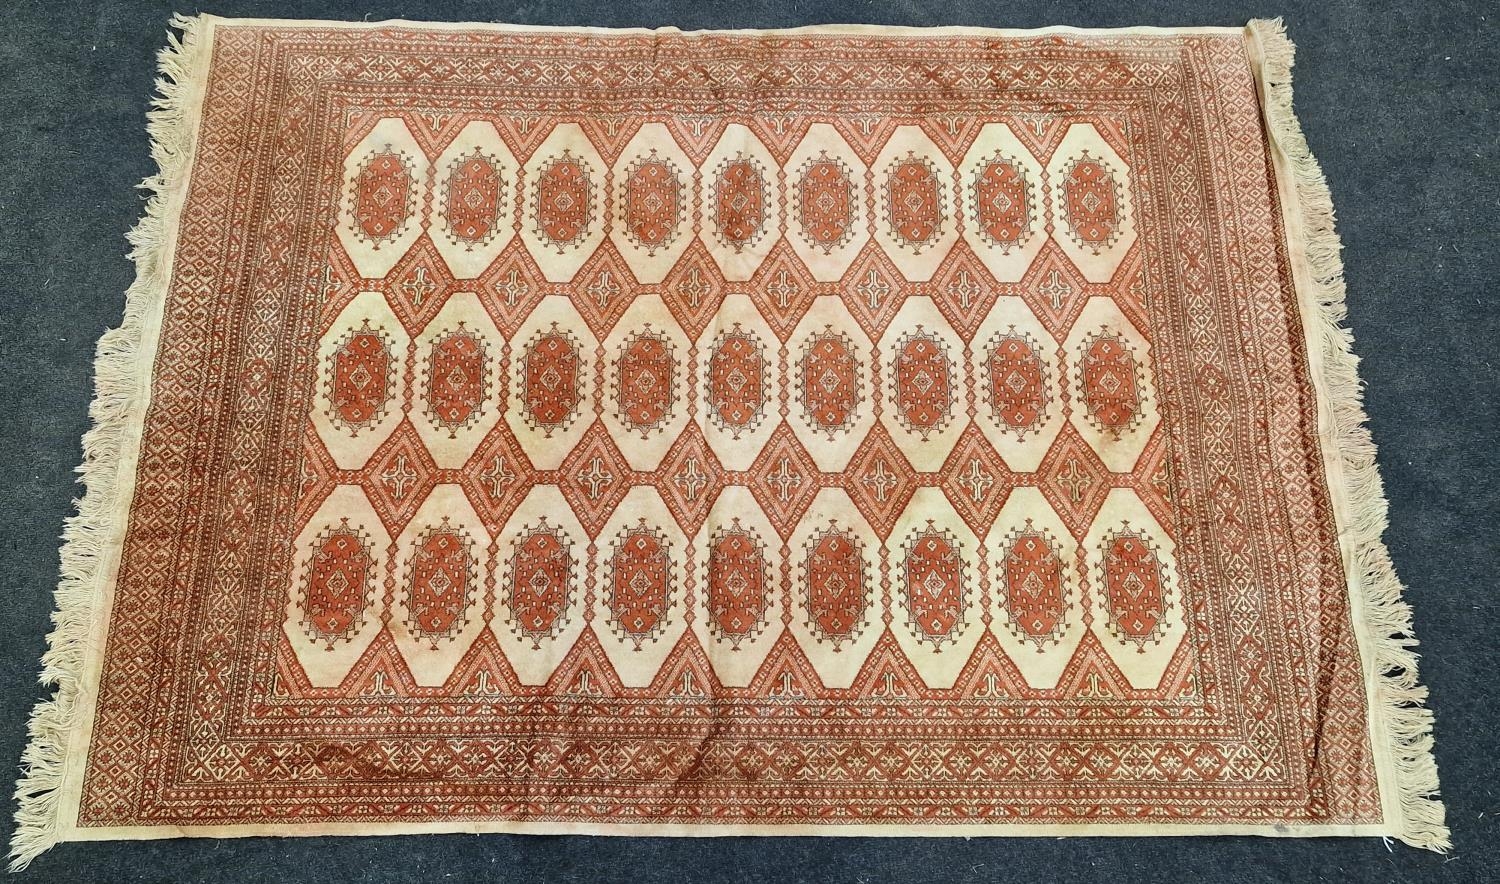 Vintage patterned carpet on beige ground 188x135cm.